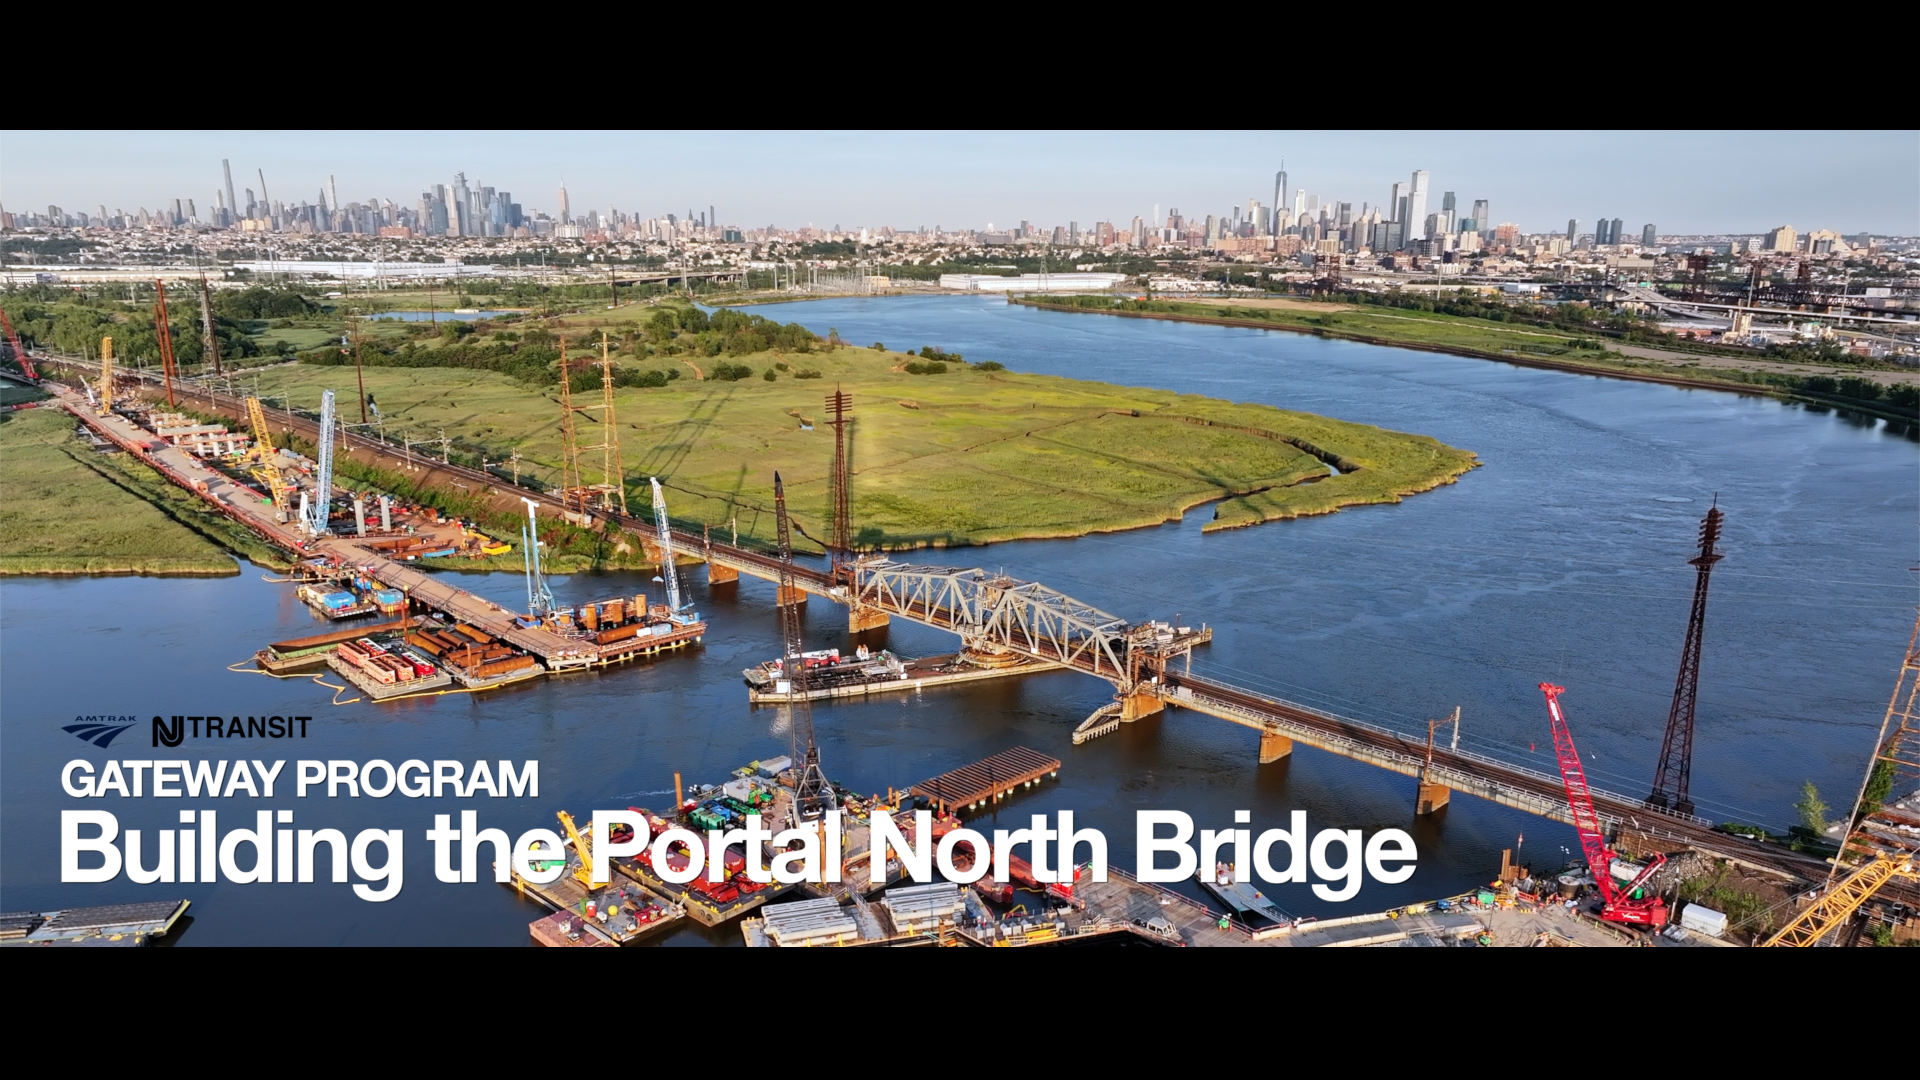 The Portal North Bridge